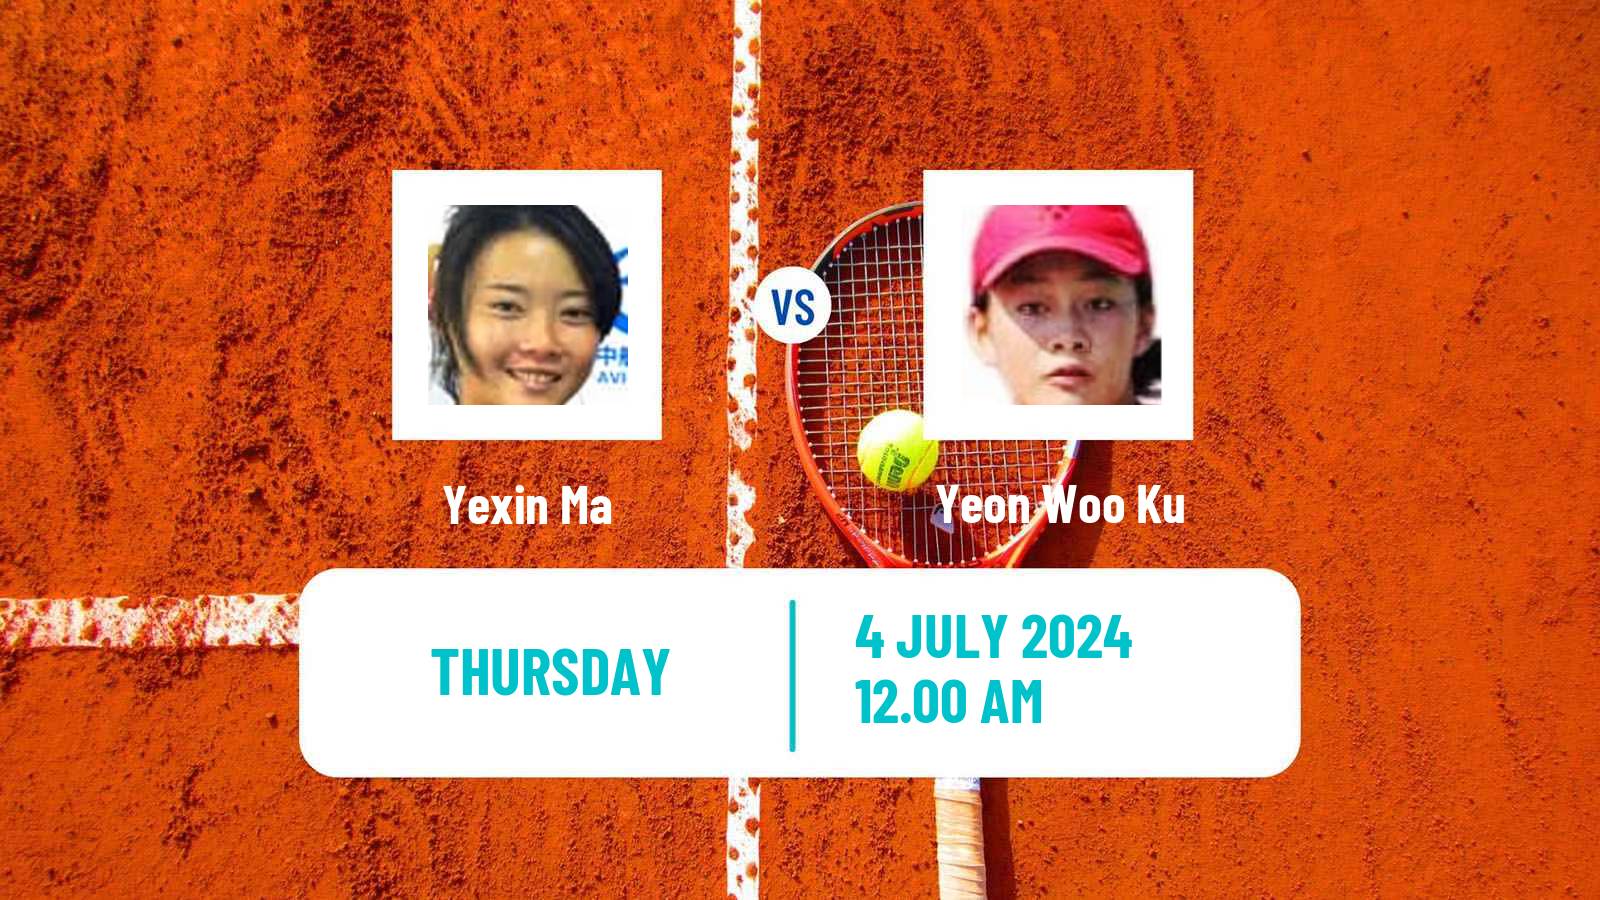 Tennis ITF W35 Hong Kong Women Yexin Ma - Yeon Woo Ku